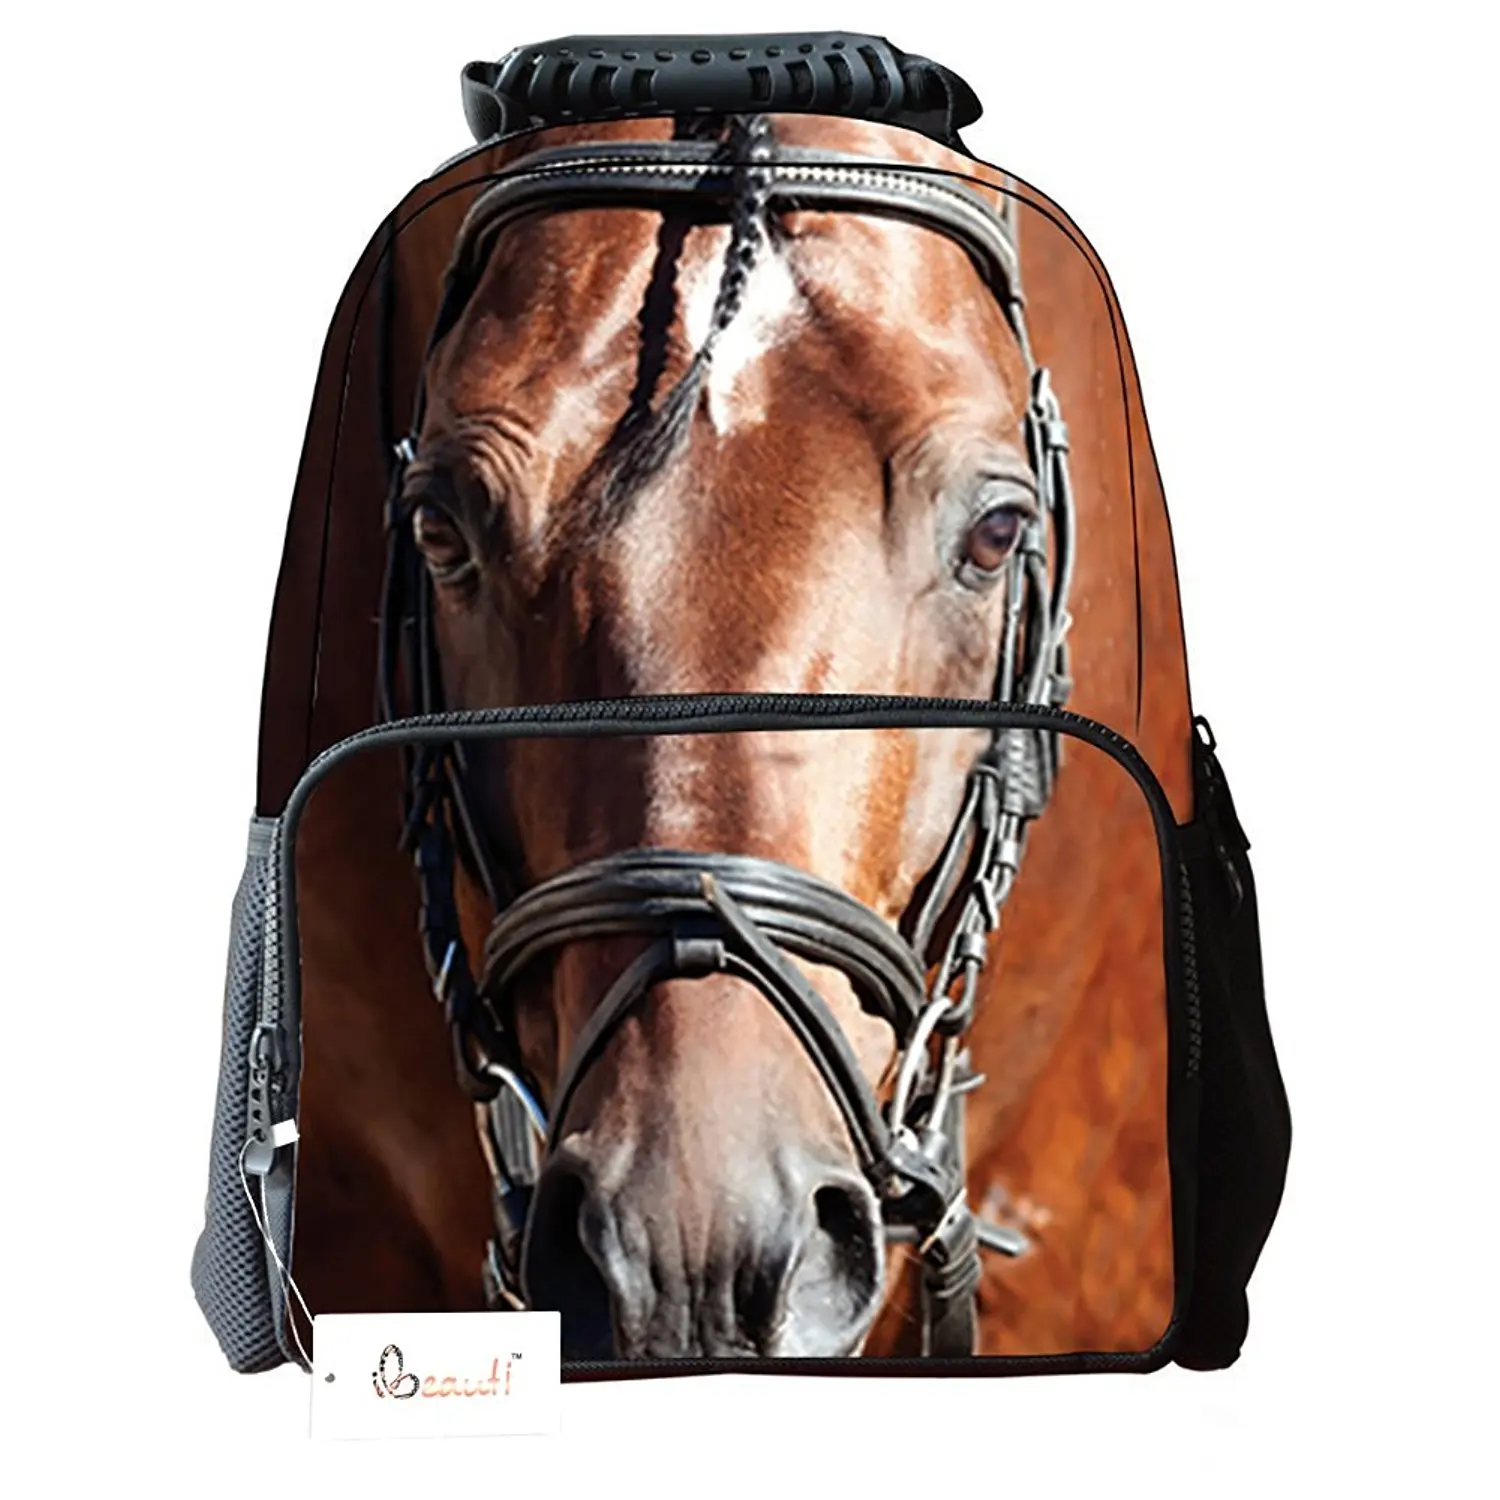 jansport horse backpack